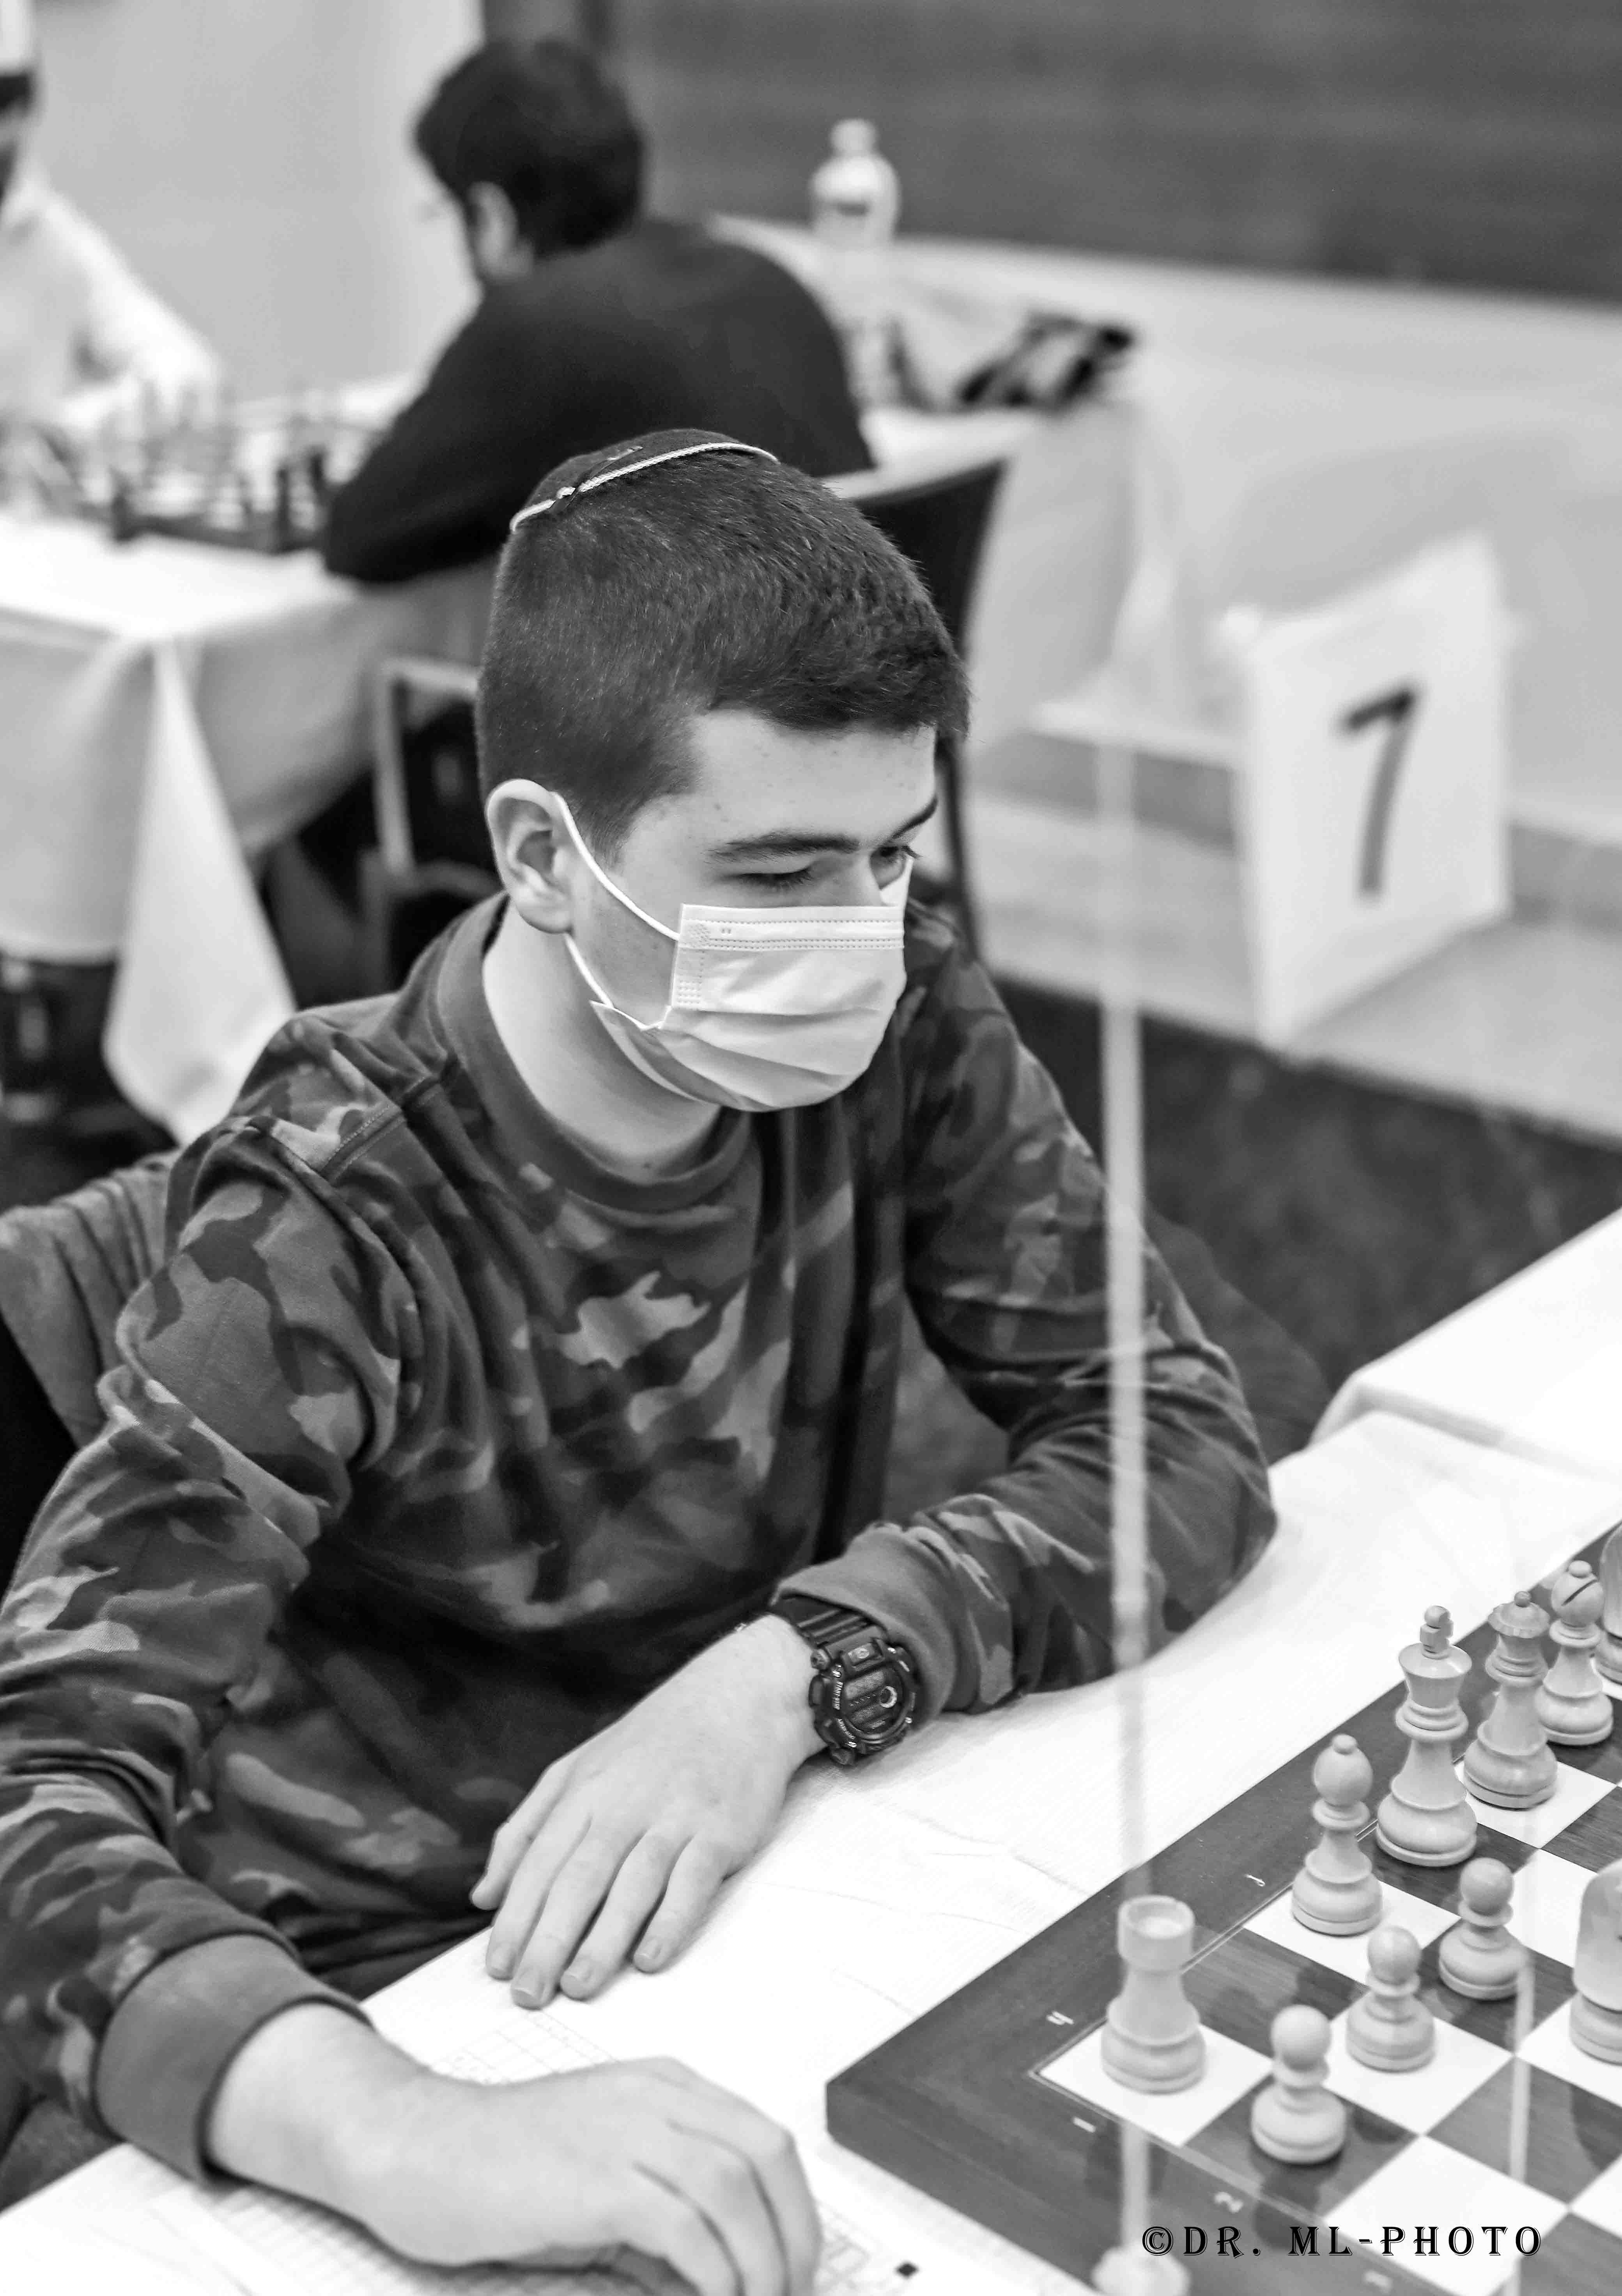 הישג לשחקן הנוער של אליצור פ"ת בגמר אליפות הארץ בשחמט לבוגרים – אסיף סולומון